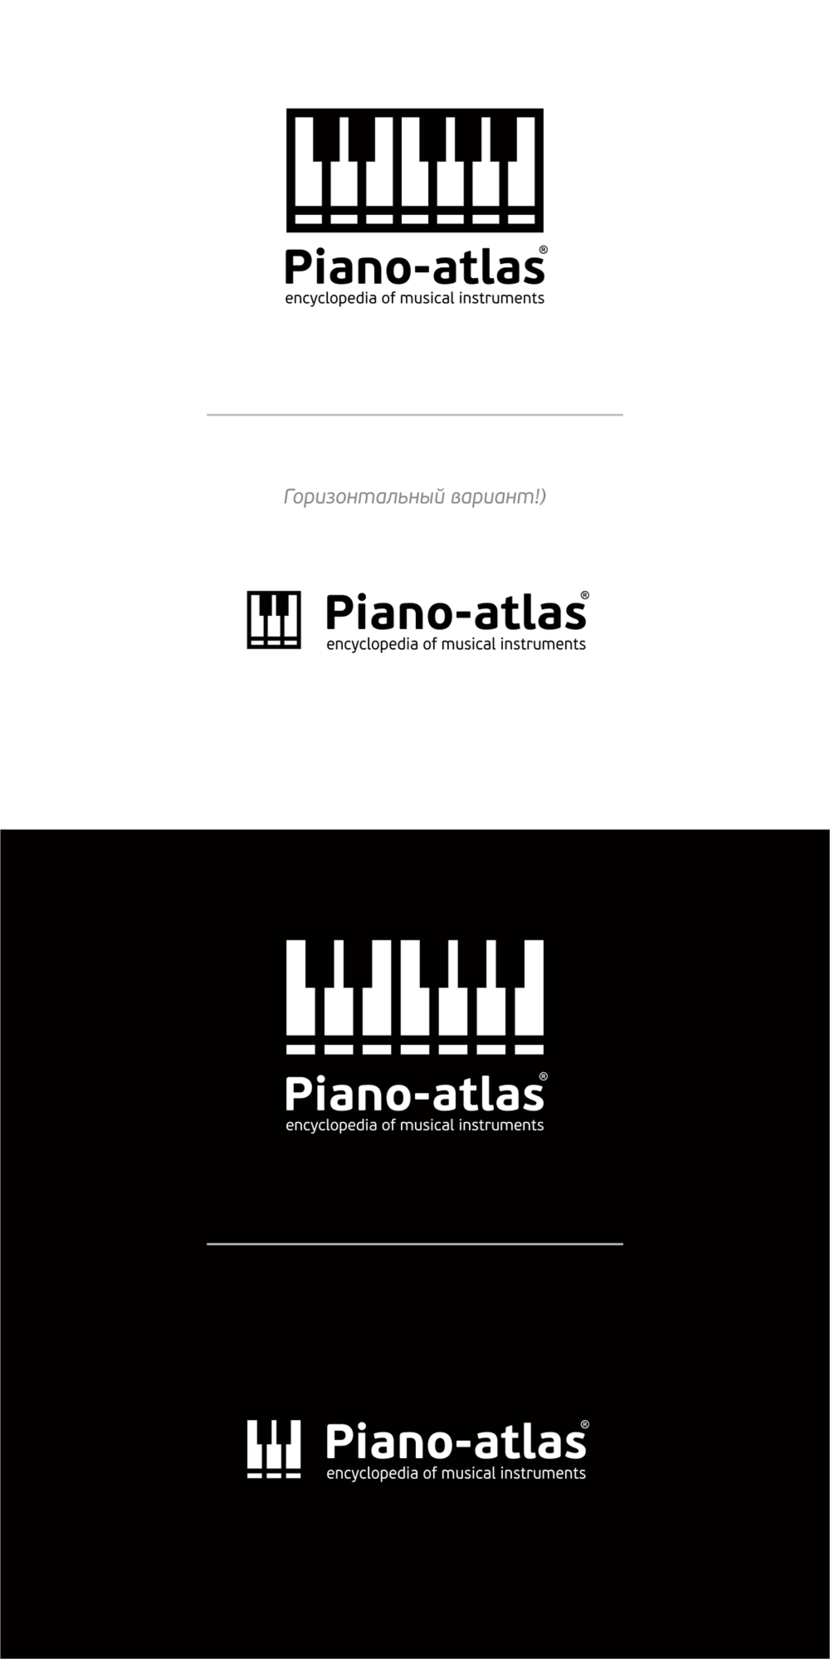 + Горизонтальный вариант!) - Конкурс для проекта piano-atlas.ru